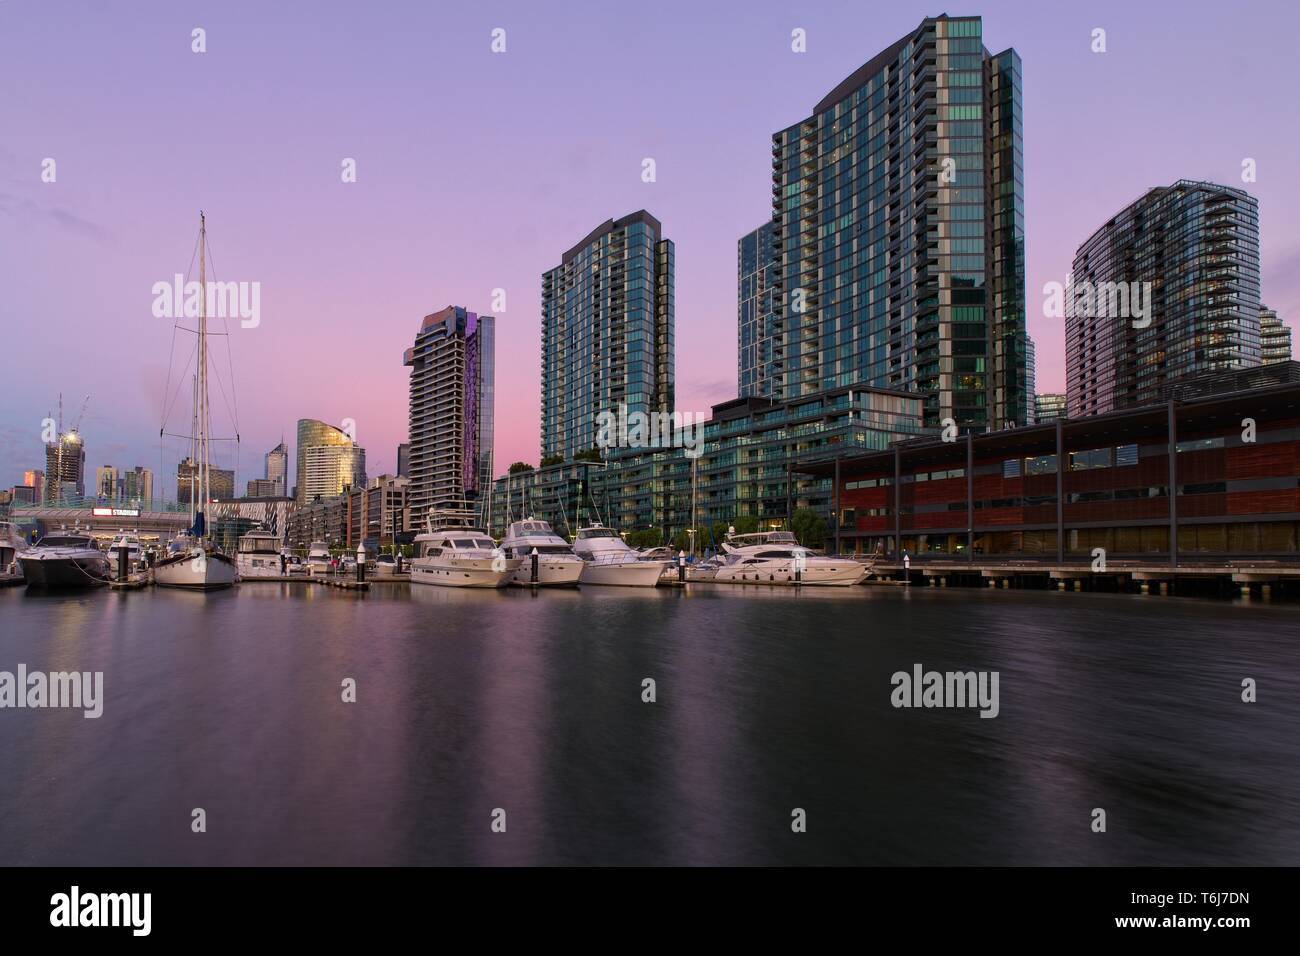 Docklands Melbourne Victoria Promenade du port de plaisance et de grands immeubles à appartements de la tons roses et mauves de coucher du soleil Banque D'Images